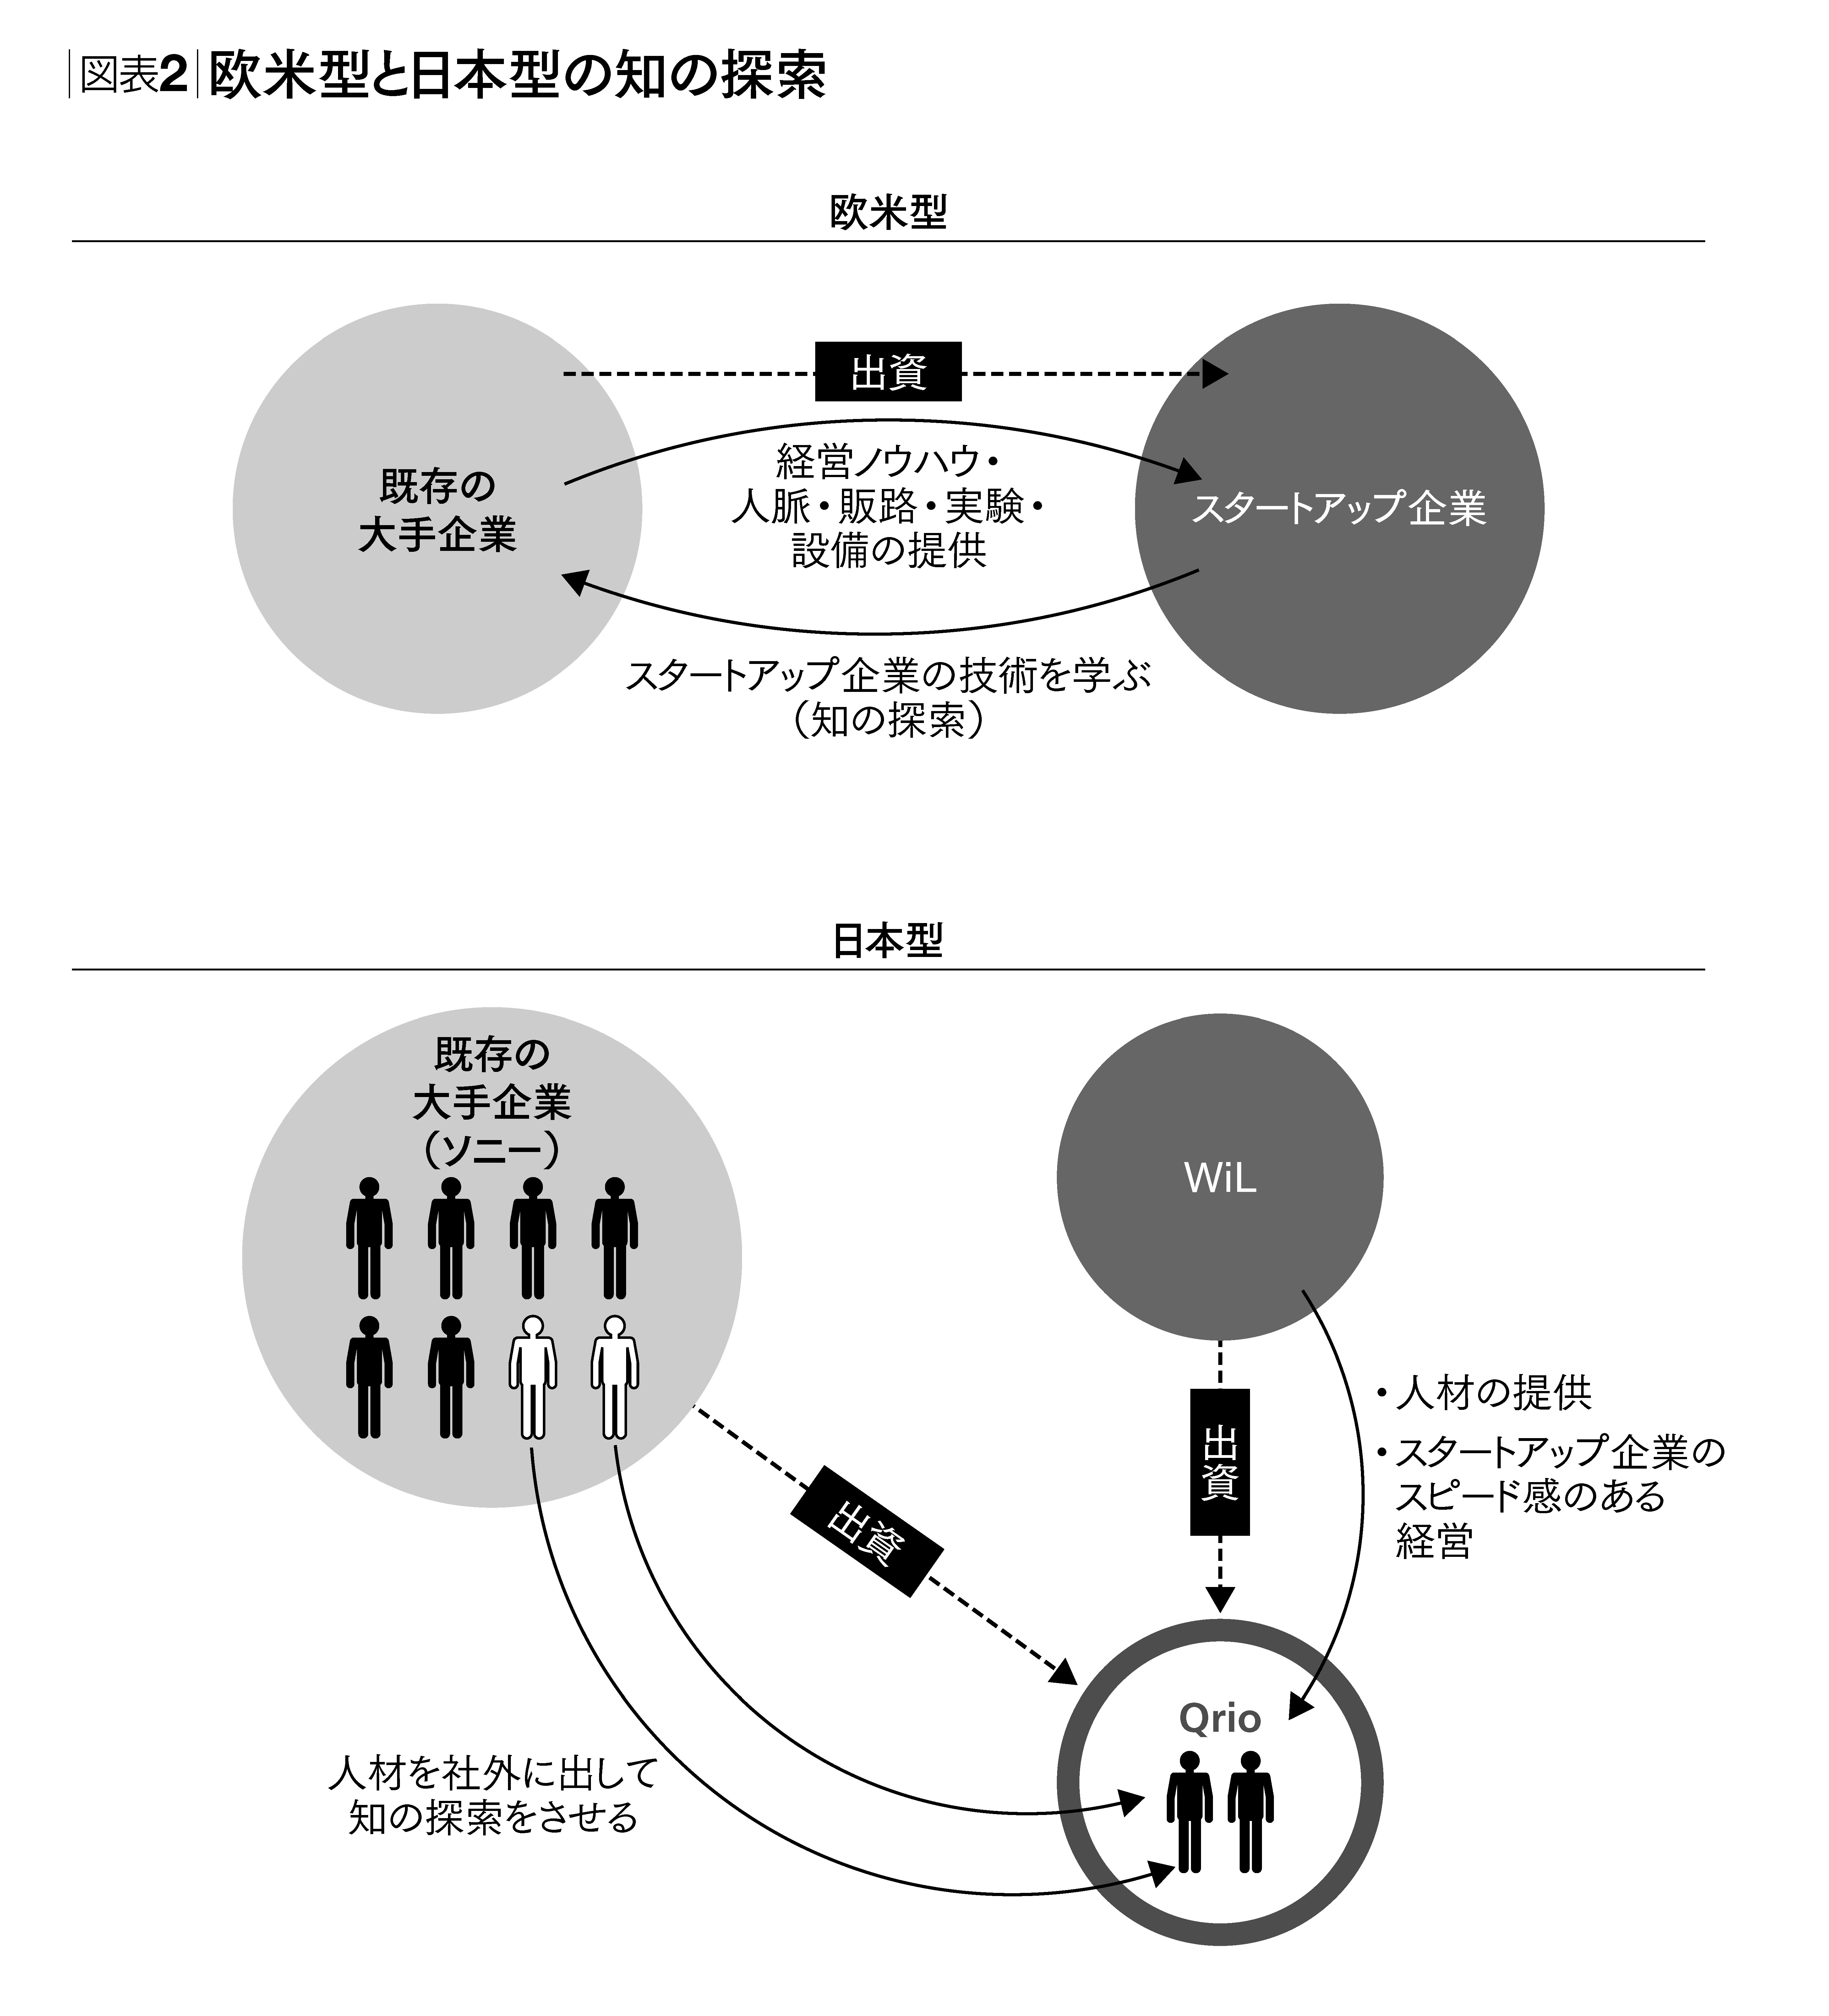 日本企業のイノベーションの源泉はどこにあるのか | 世界標準の経営